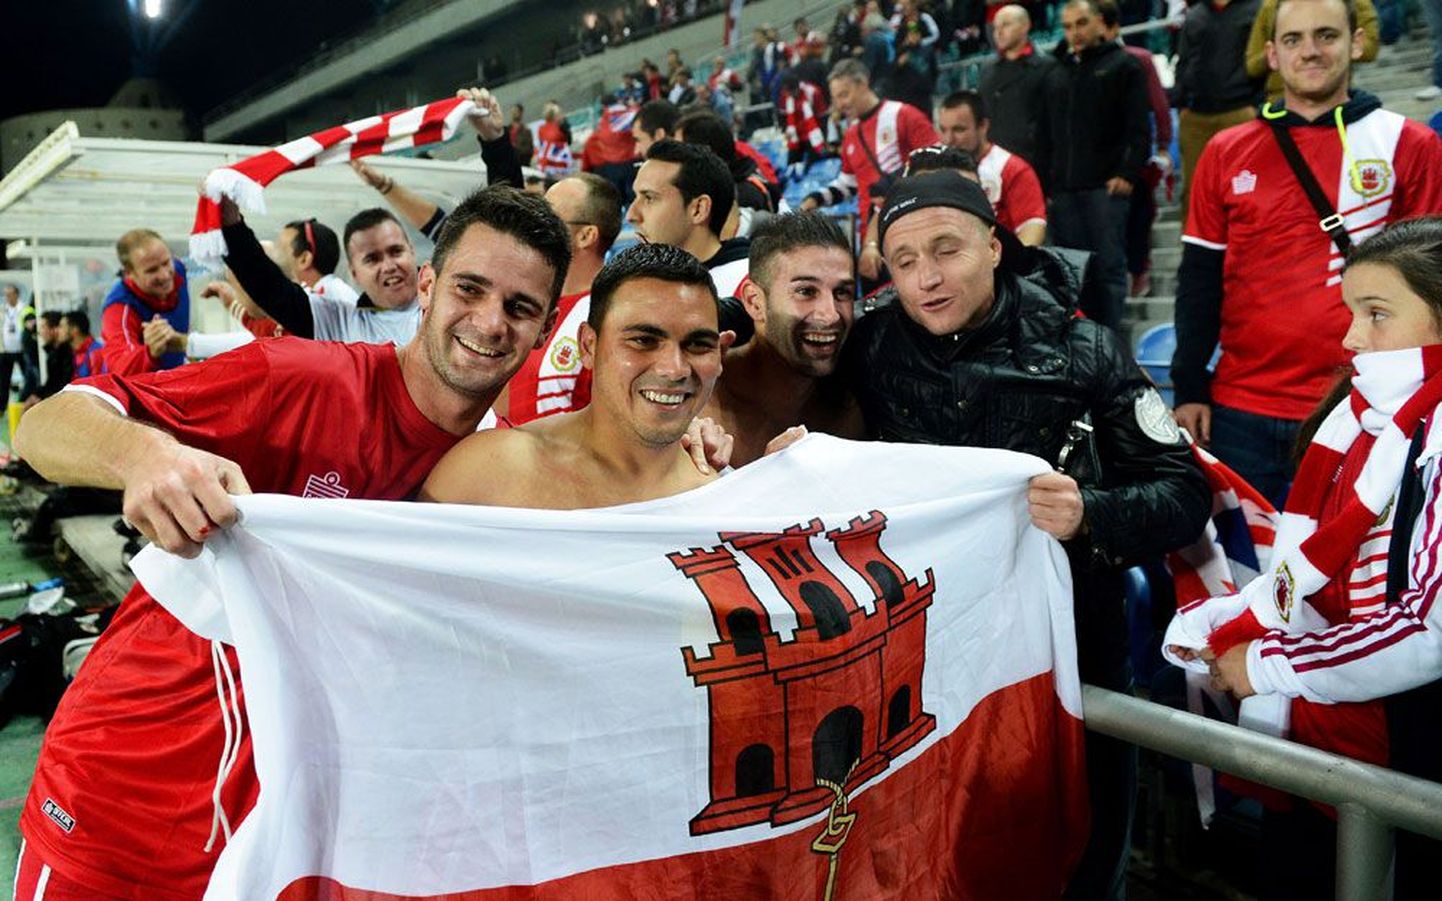 Gibraltari jalgpallikoondislased koos fännidega rõõmustamas pärast 0:0 viiki Slovakkiaga. Hüüdnime «Team 54» kandvast Gibraltarist sai mullu UEFA 54. liige.